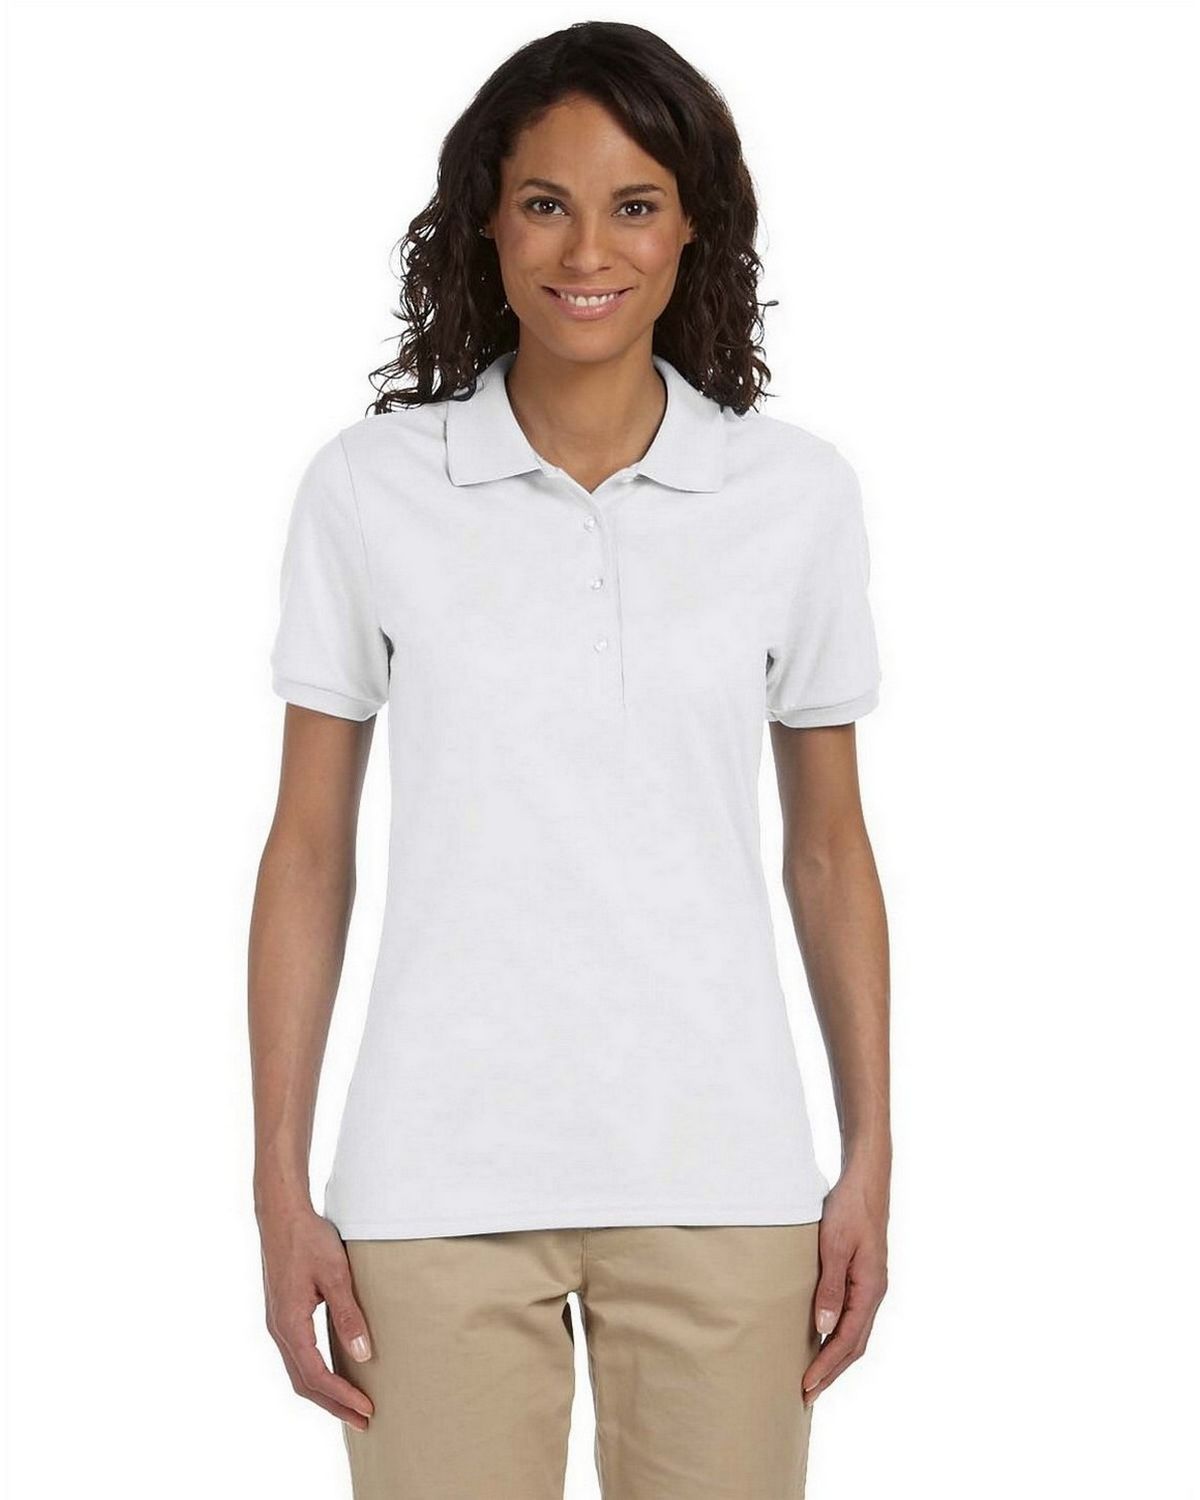 polo white shirt for ladies